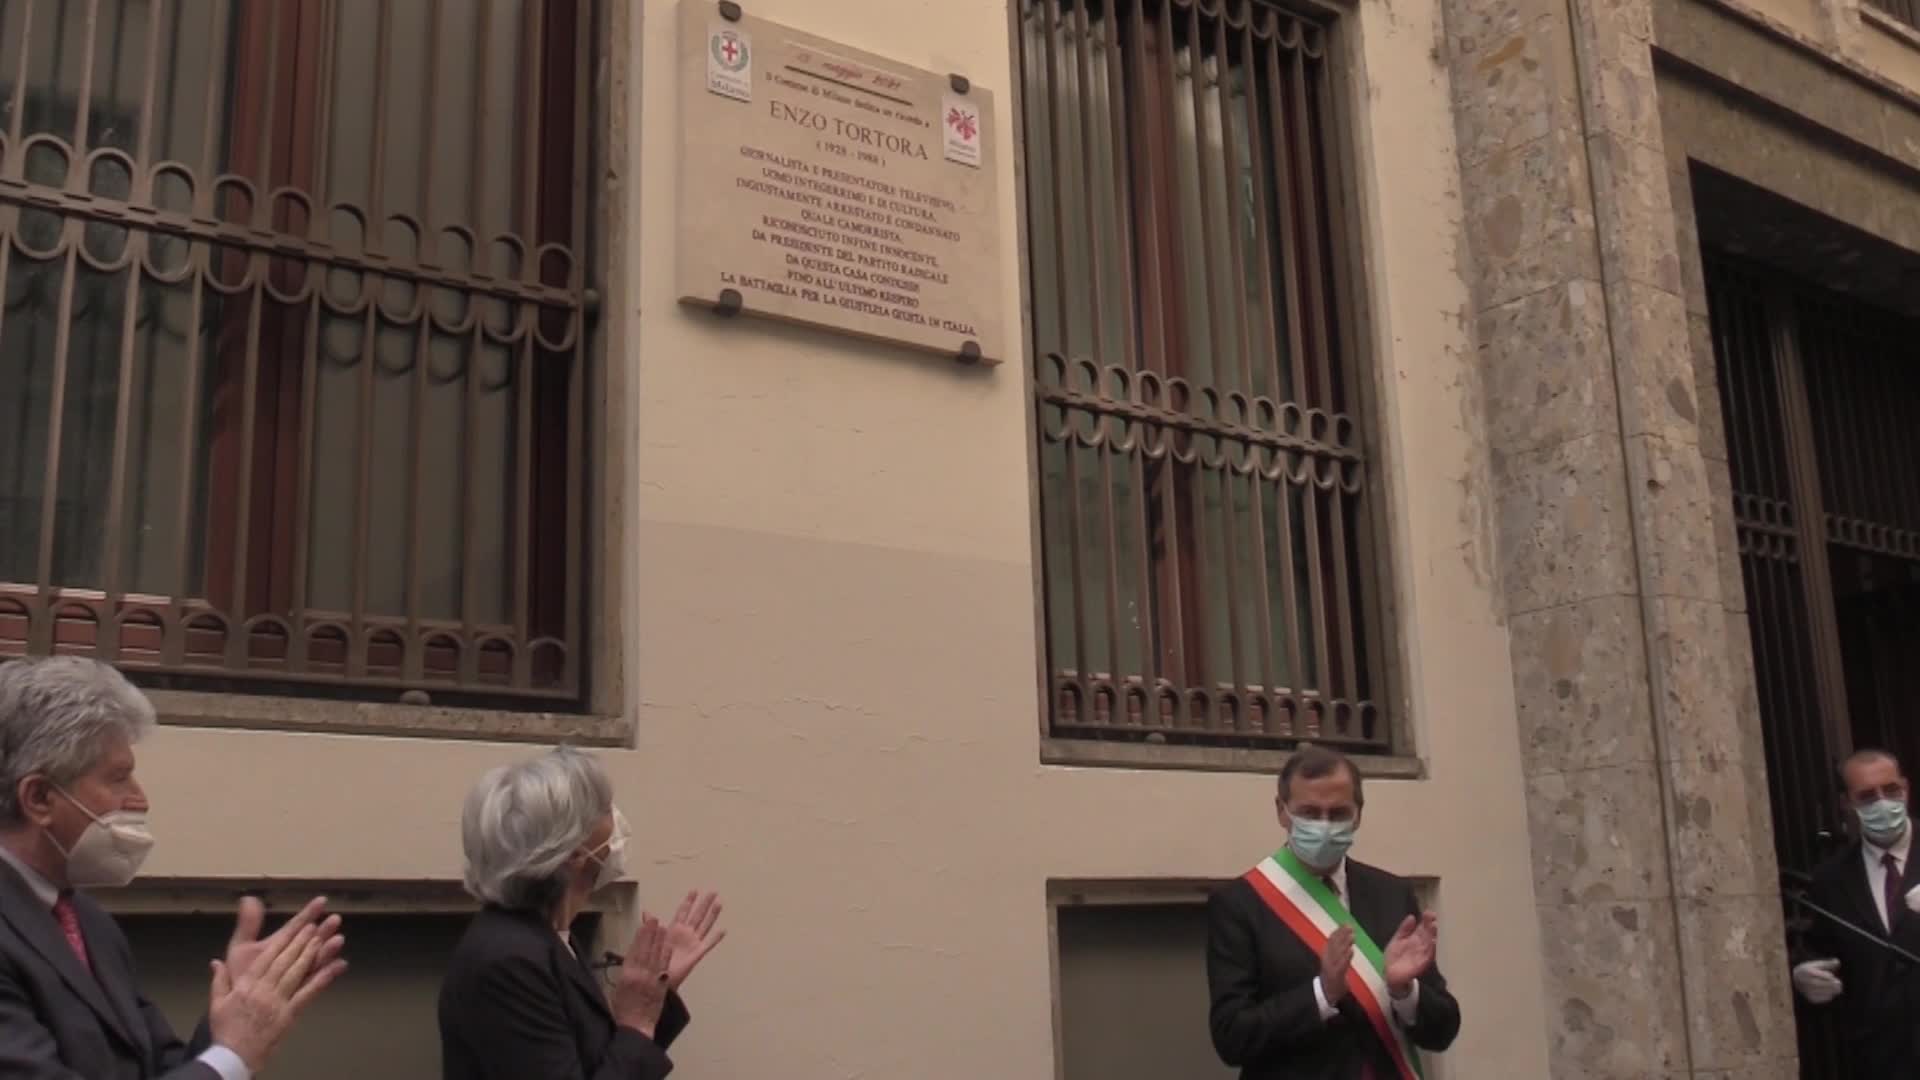 A Milano una targa commemorativa per Enzo Tortora, la moglie: "Ucciso dalla malagiustizia"